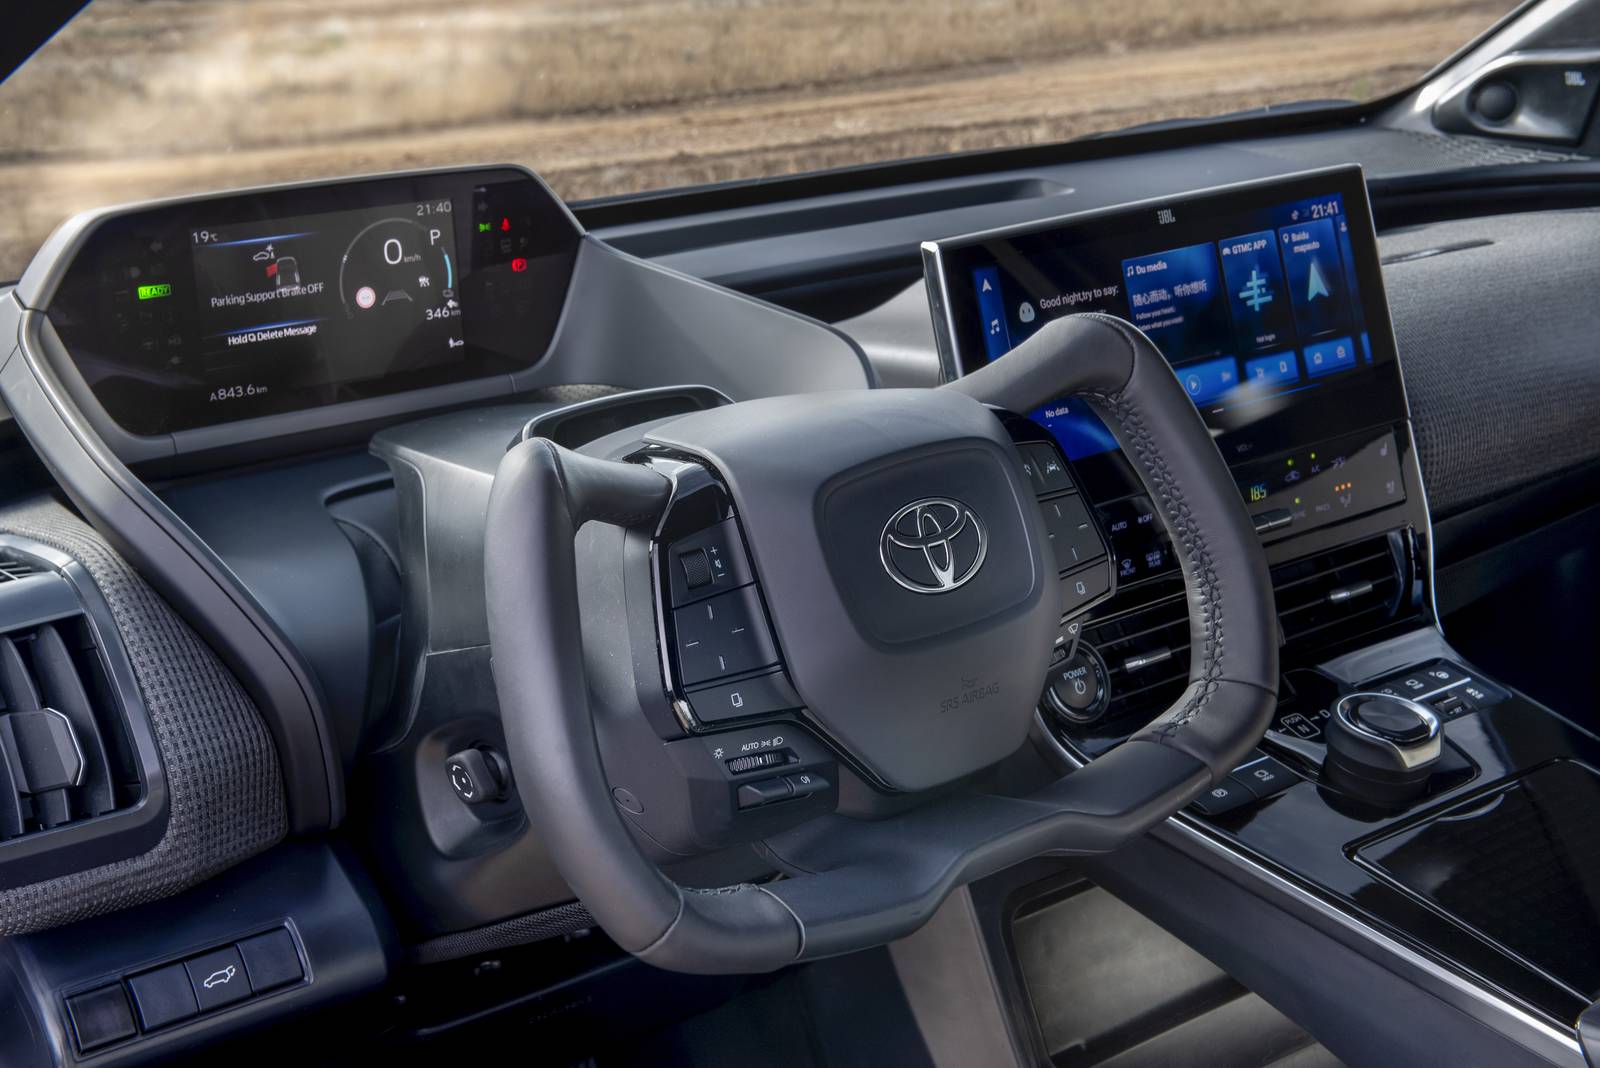 Toyota steering yoke test by Michael McAleer